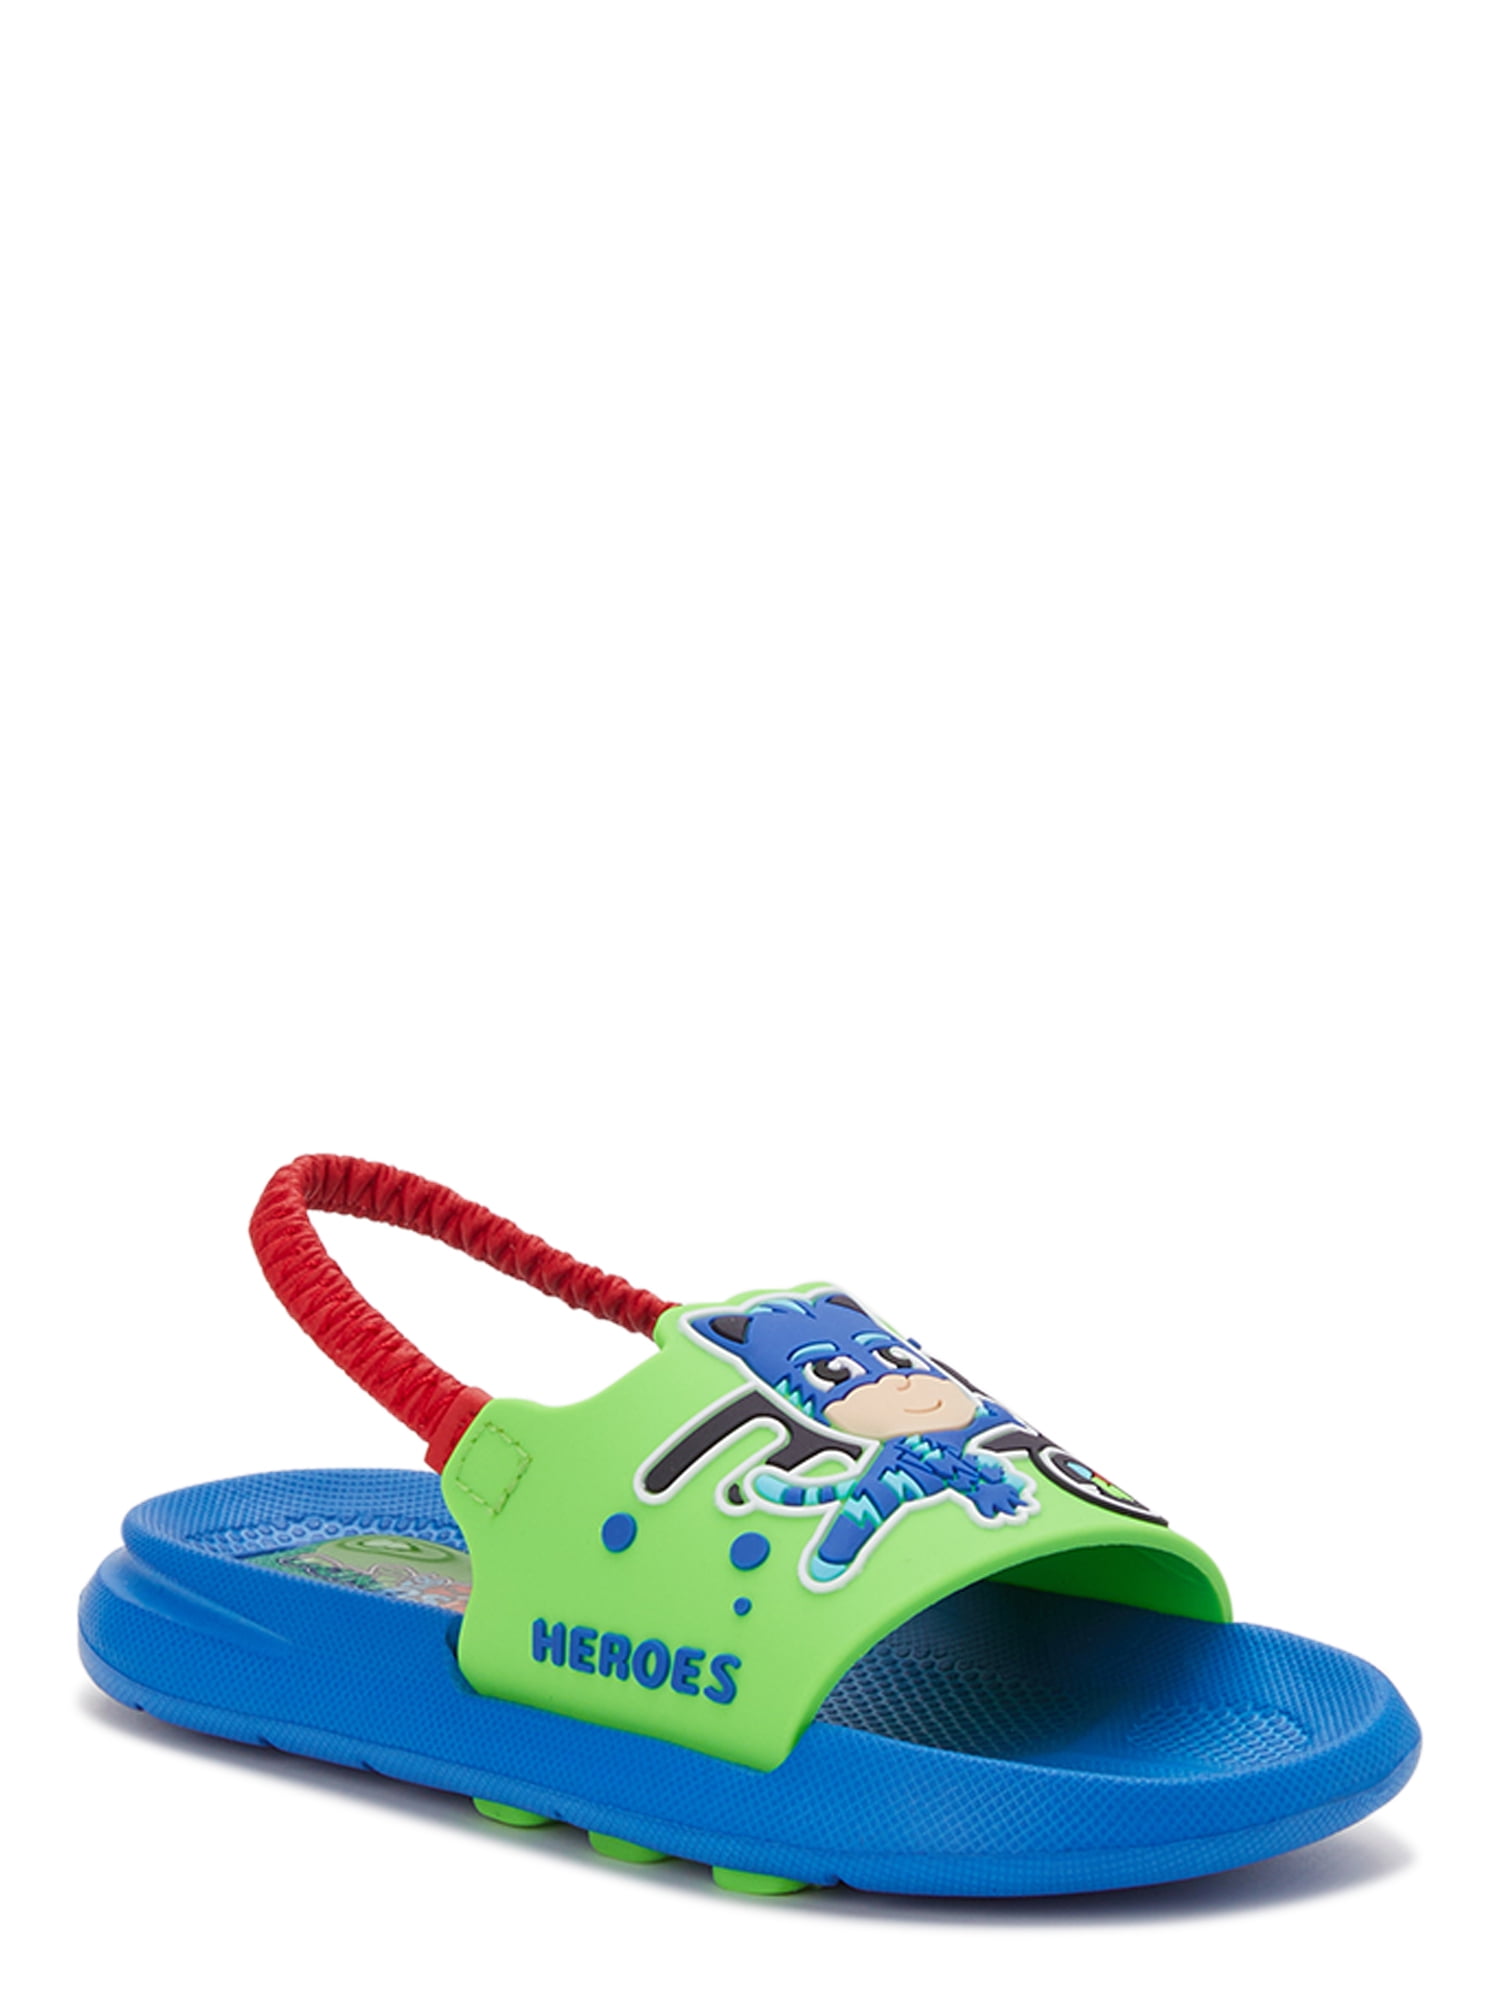 PJ Masks Toddler Boys Slide Sandals, Sizes 5/6-11/12